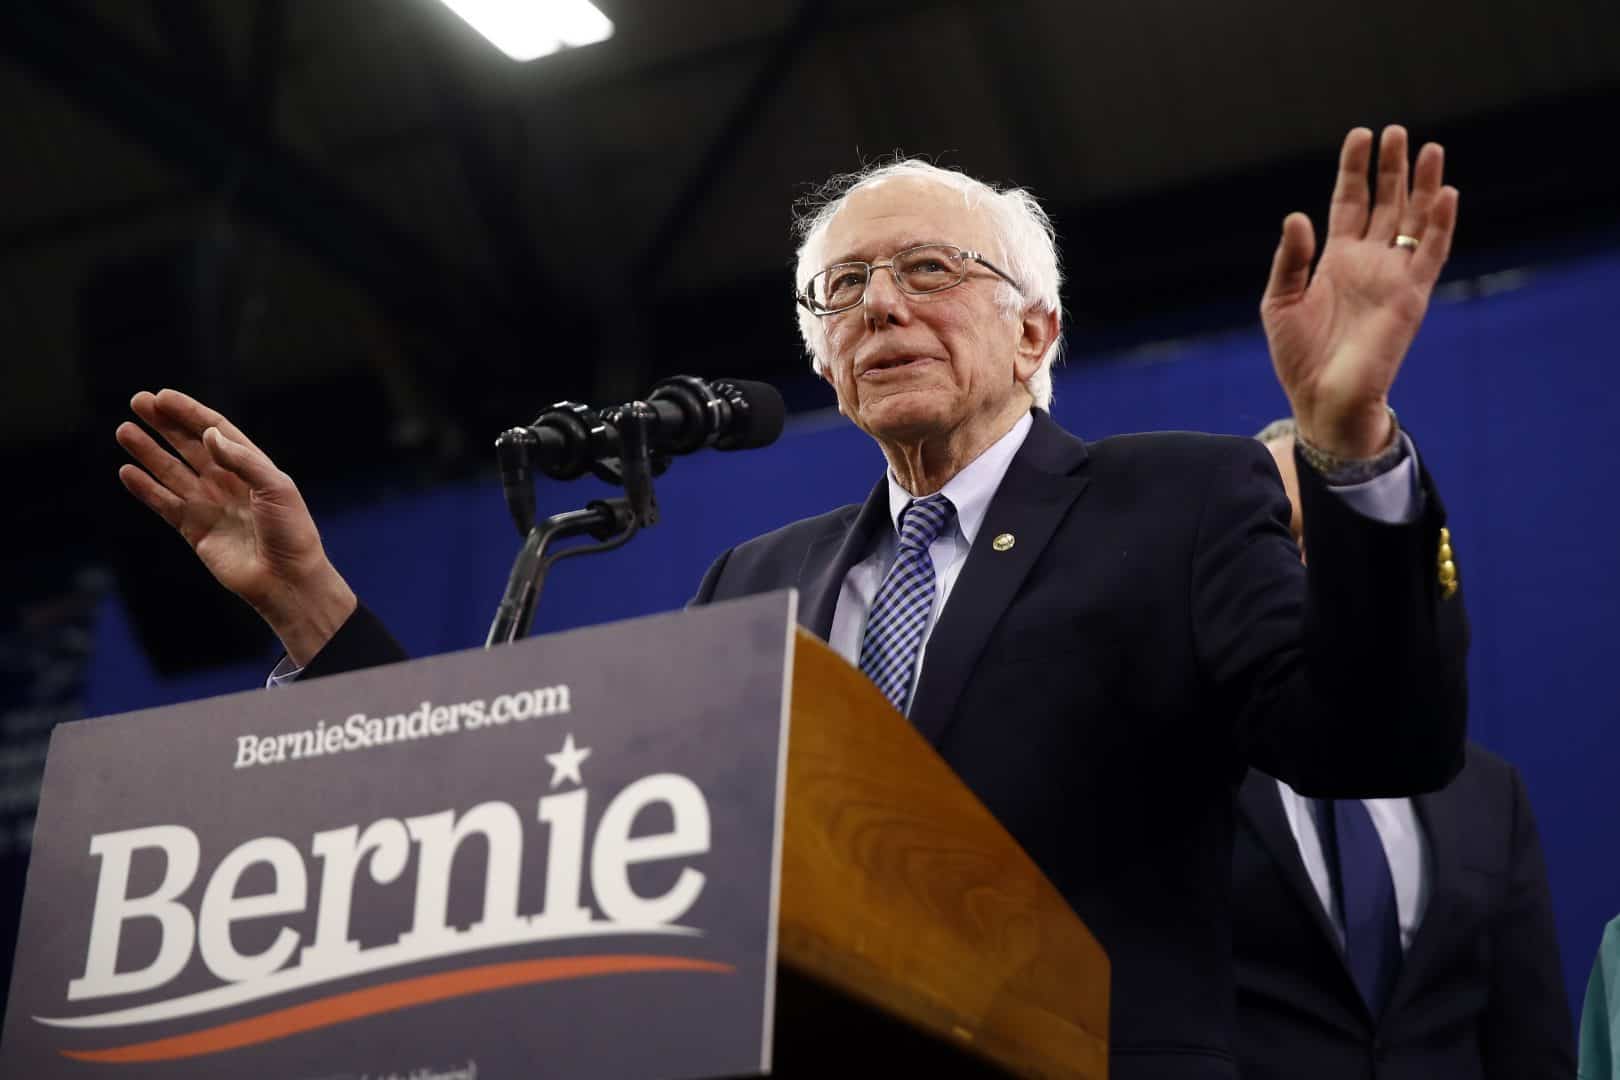 Sanders takes huge lead in national poll as Biden plummets